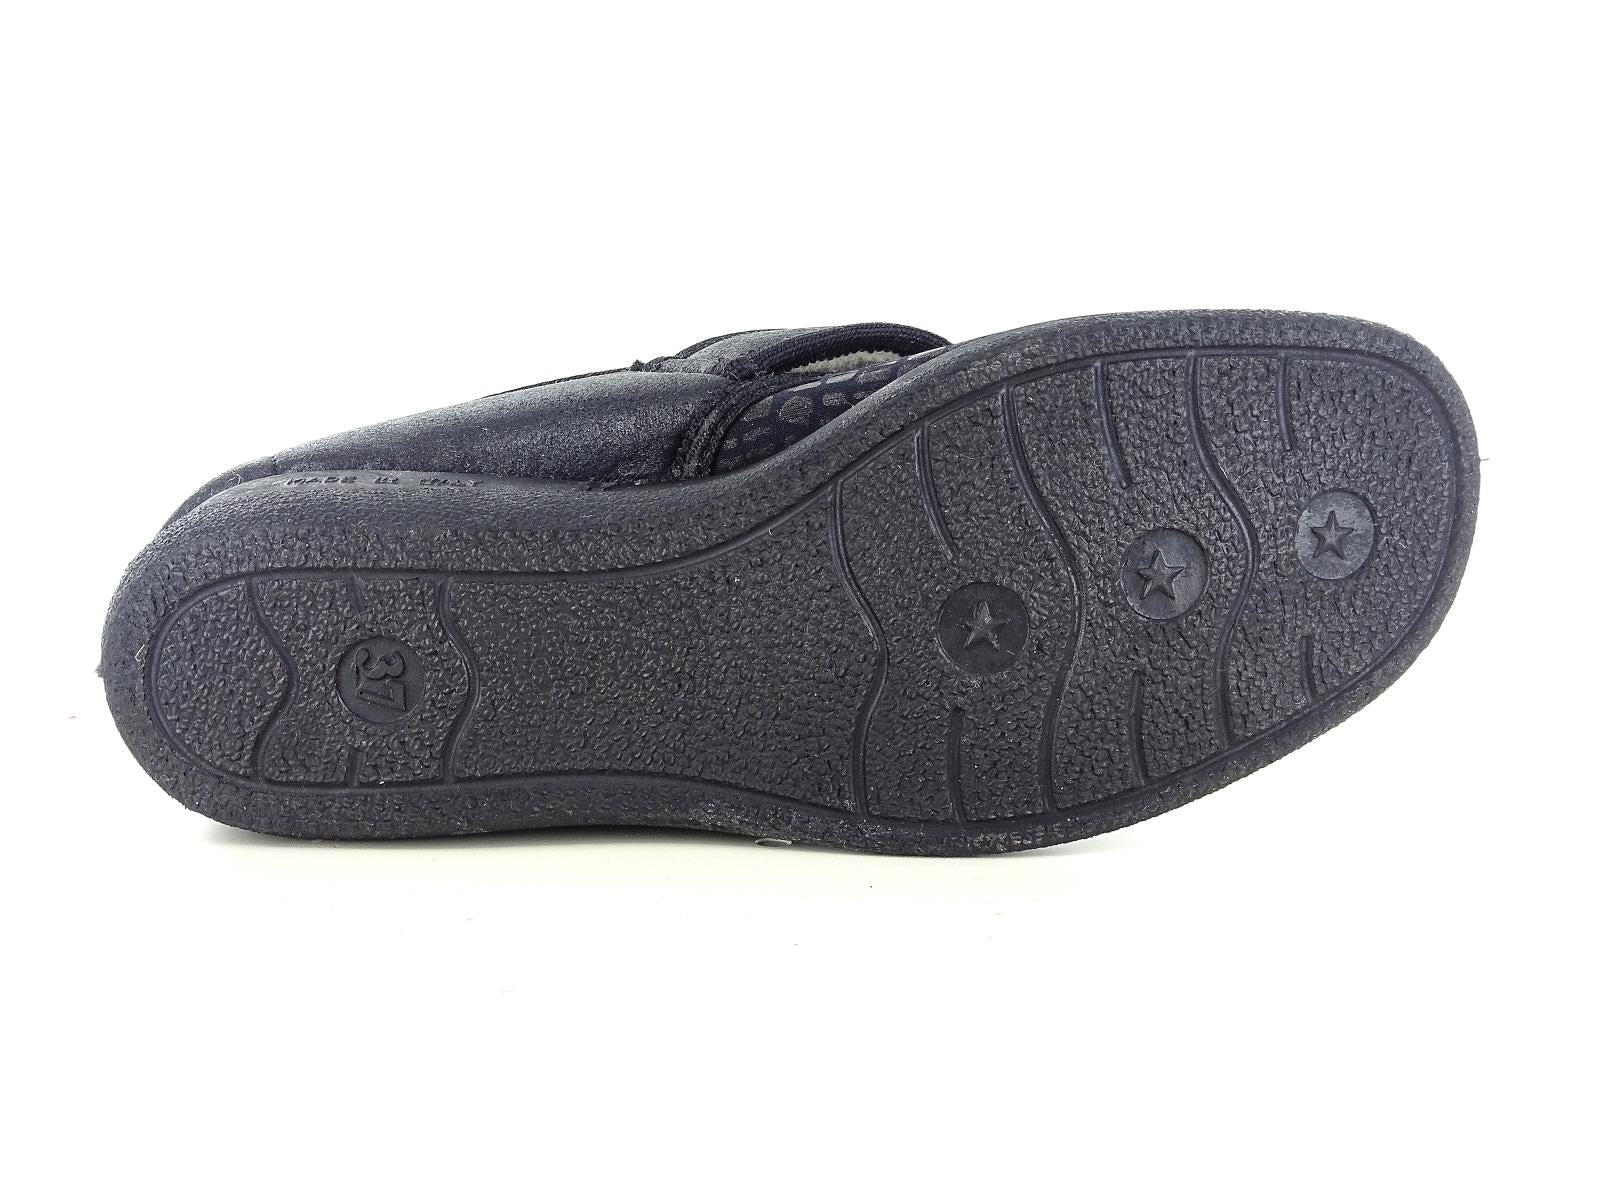 Gaviga 4515 Scarpe pantofole invernali comfort da donna in pelle sintetica con strappo nel colore nero.